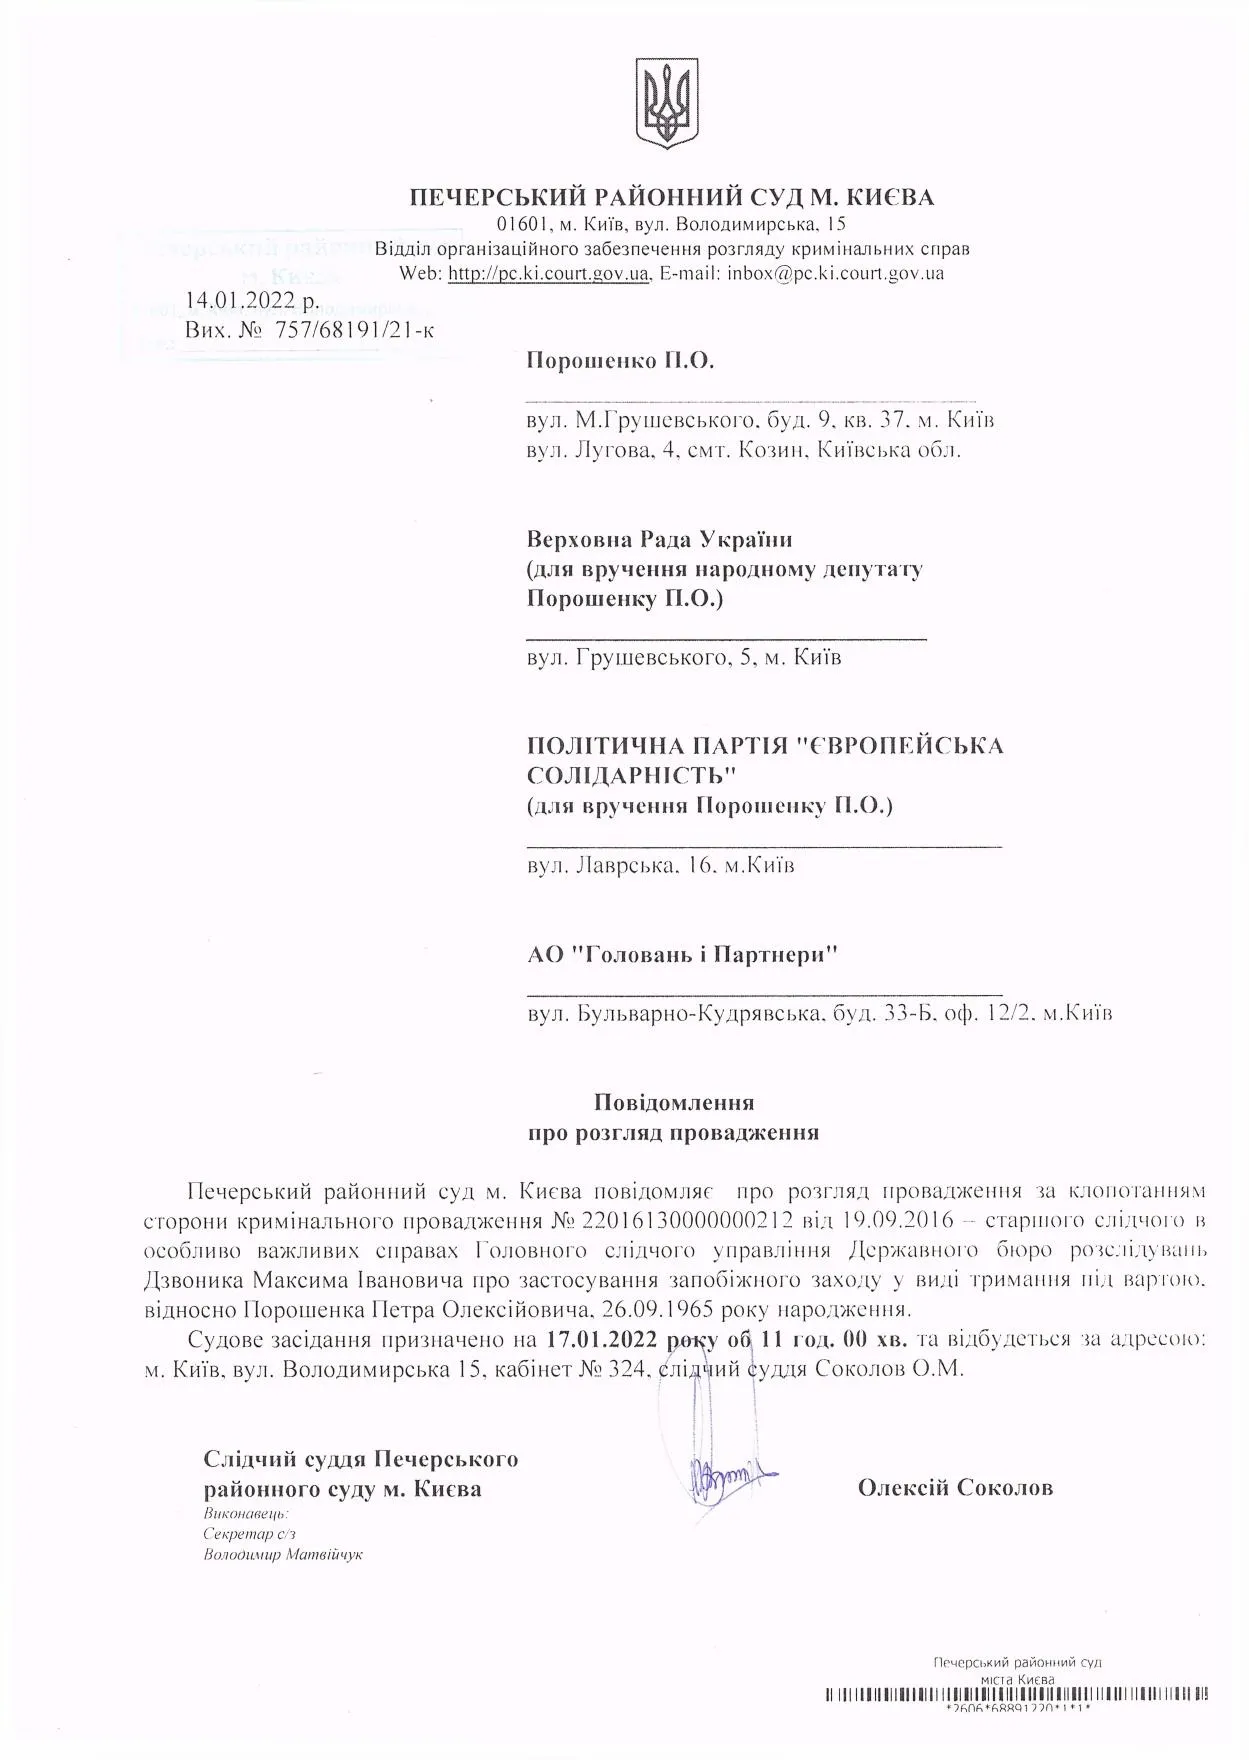 Запобіжний захід Порошенку: суд призначили на 17 січня